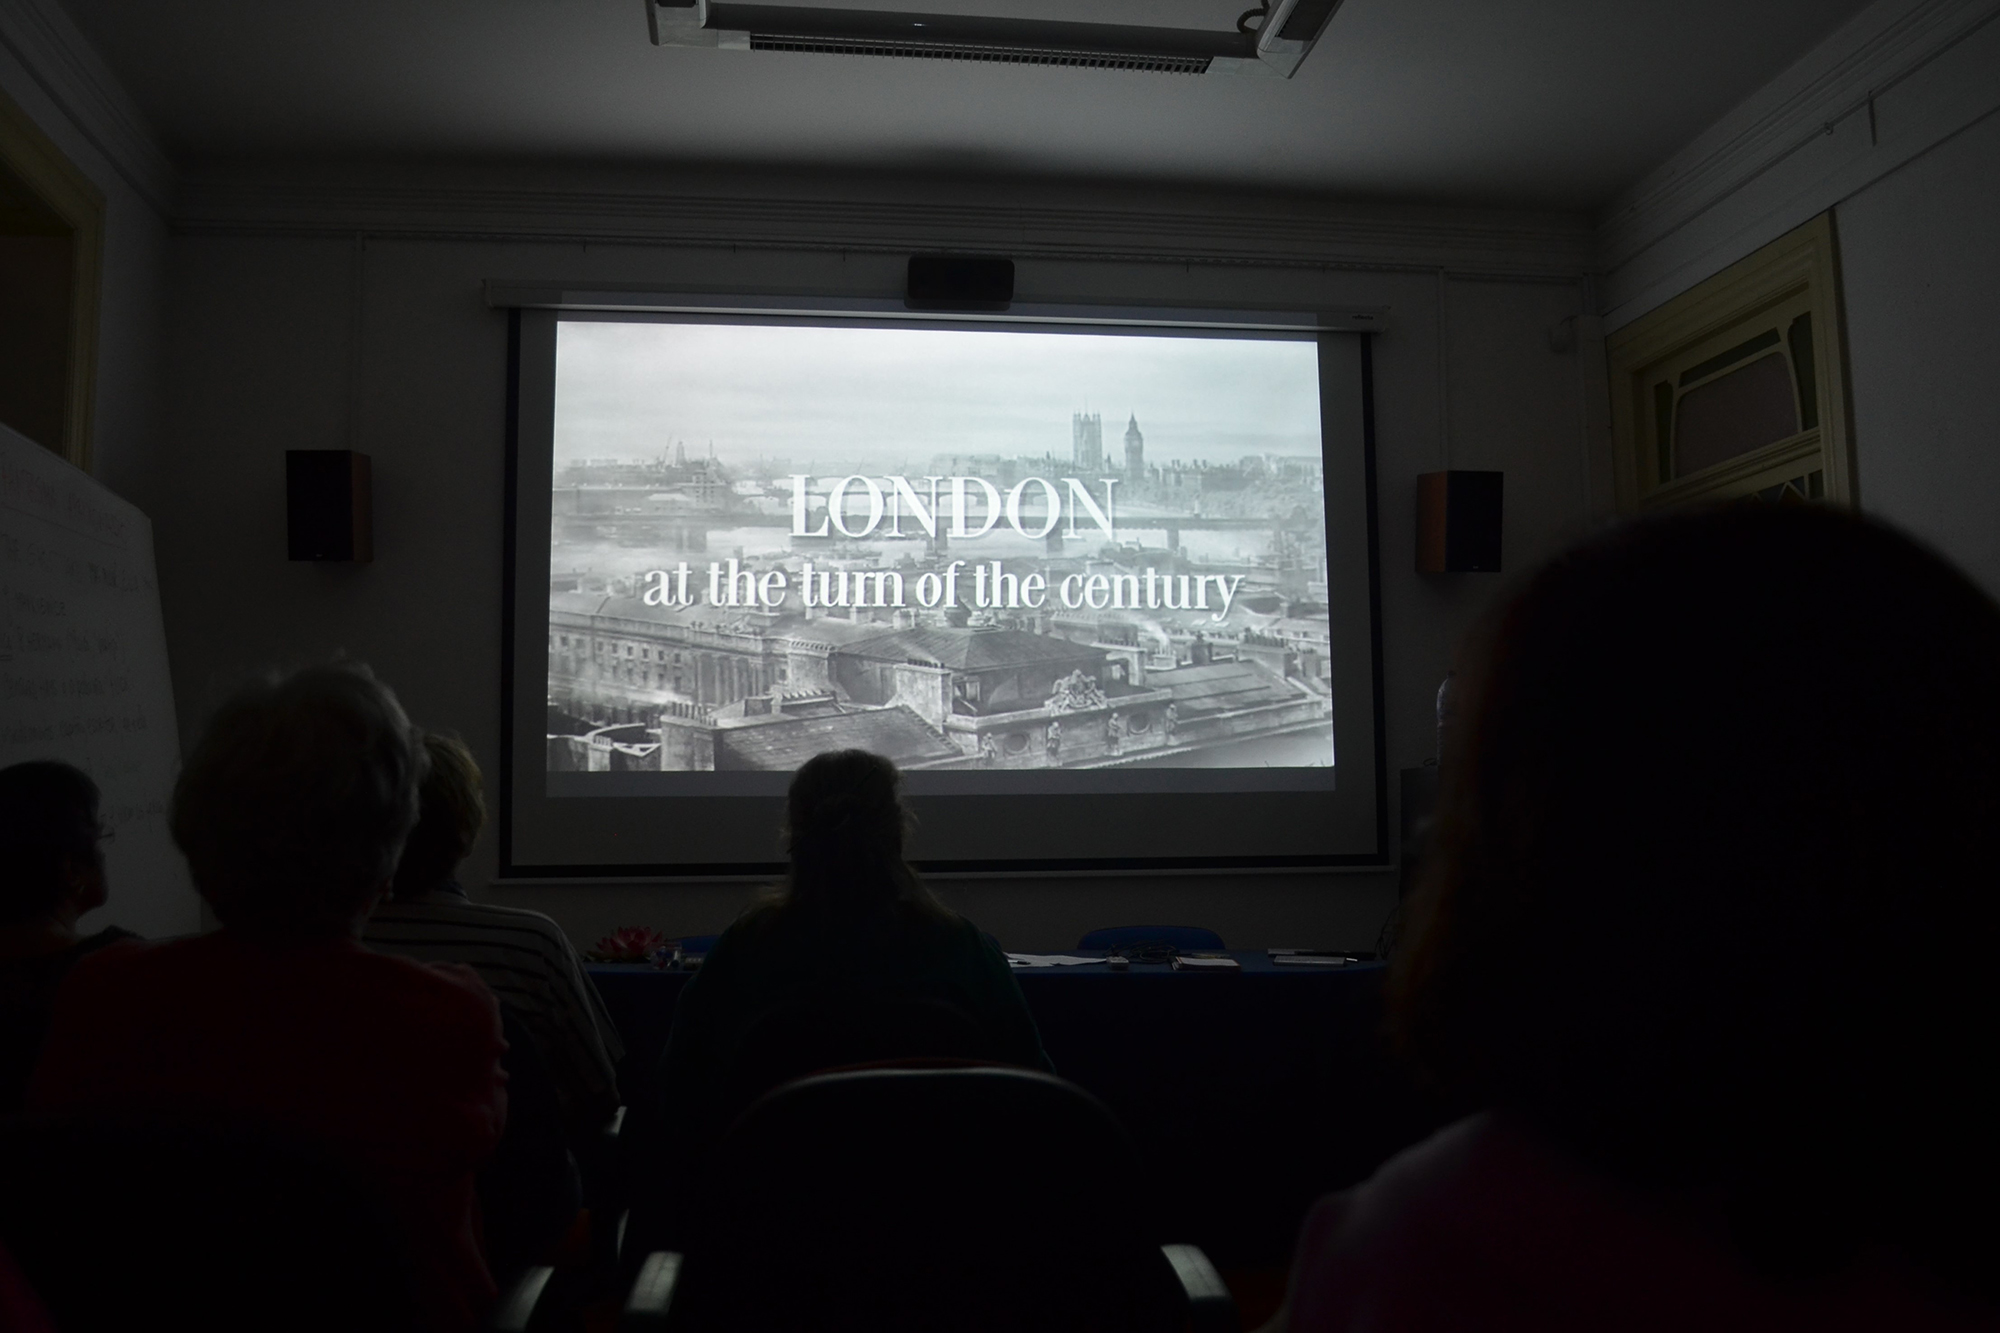 Visualização do filme de 1947, “Fantasma Apaixonado”, de Joseph L. Mankiewicz, durante a aula de História do Cinema.